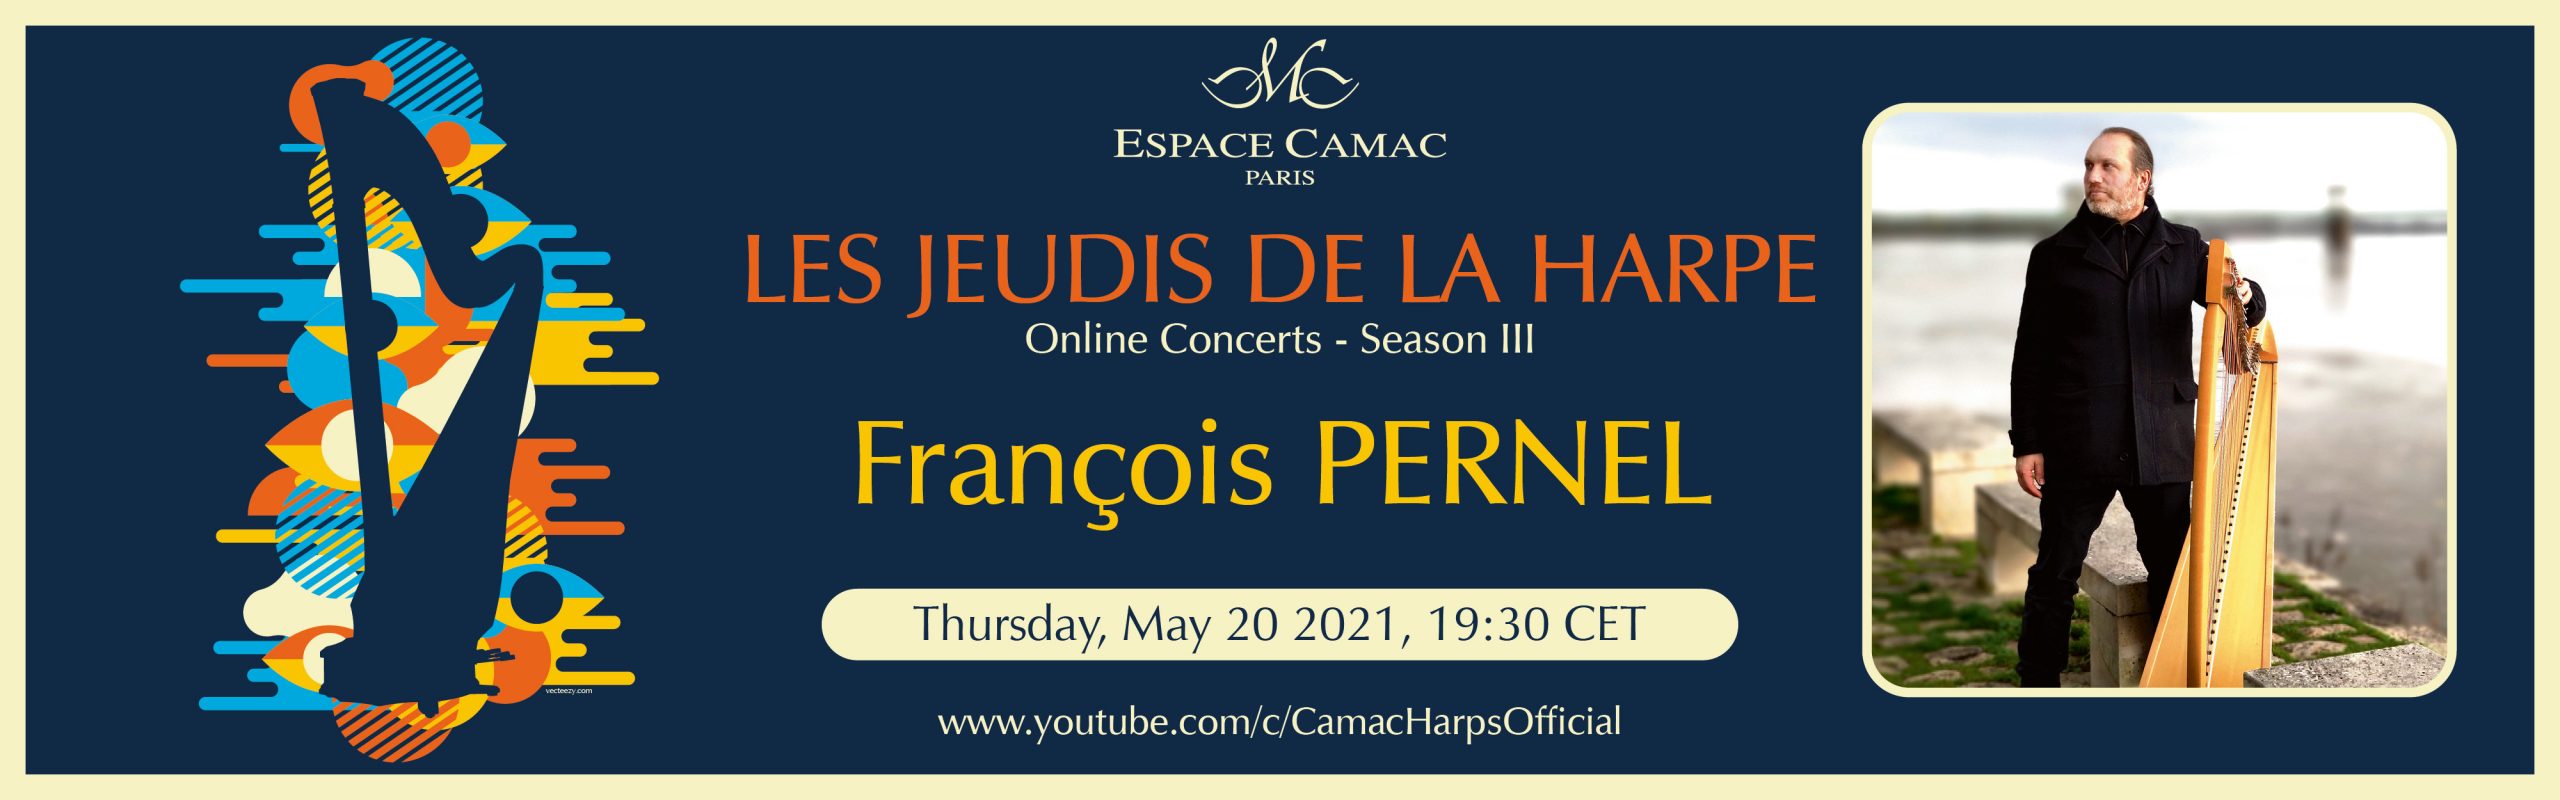 Les Jeudis de la Harpe: François Pernel